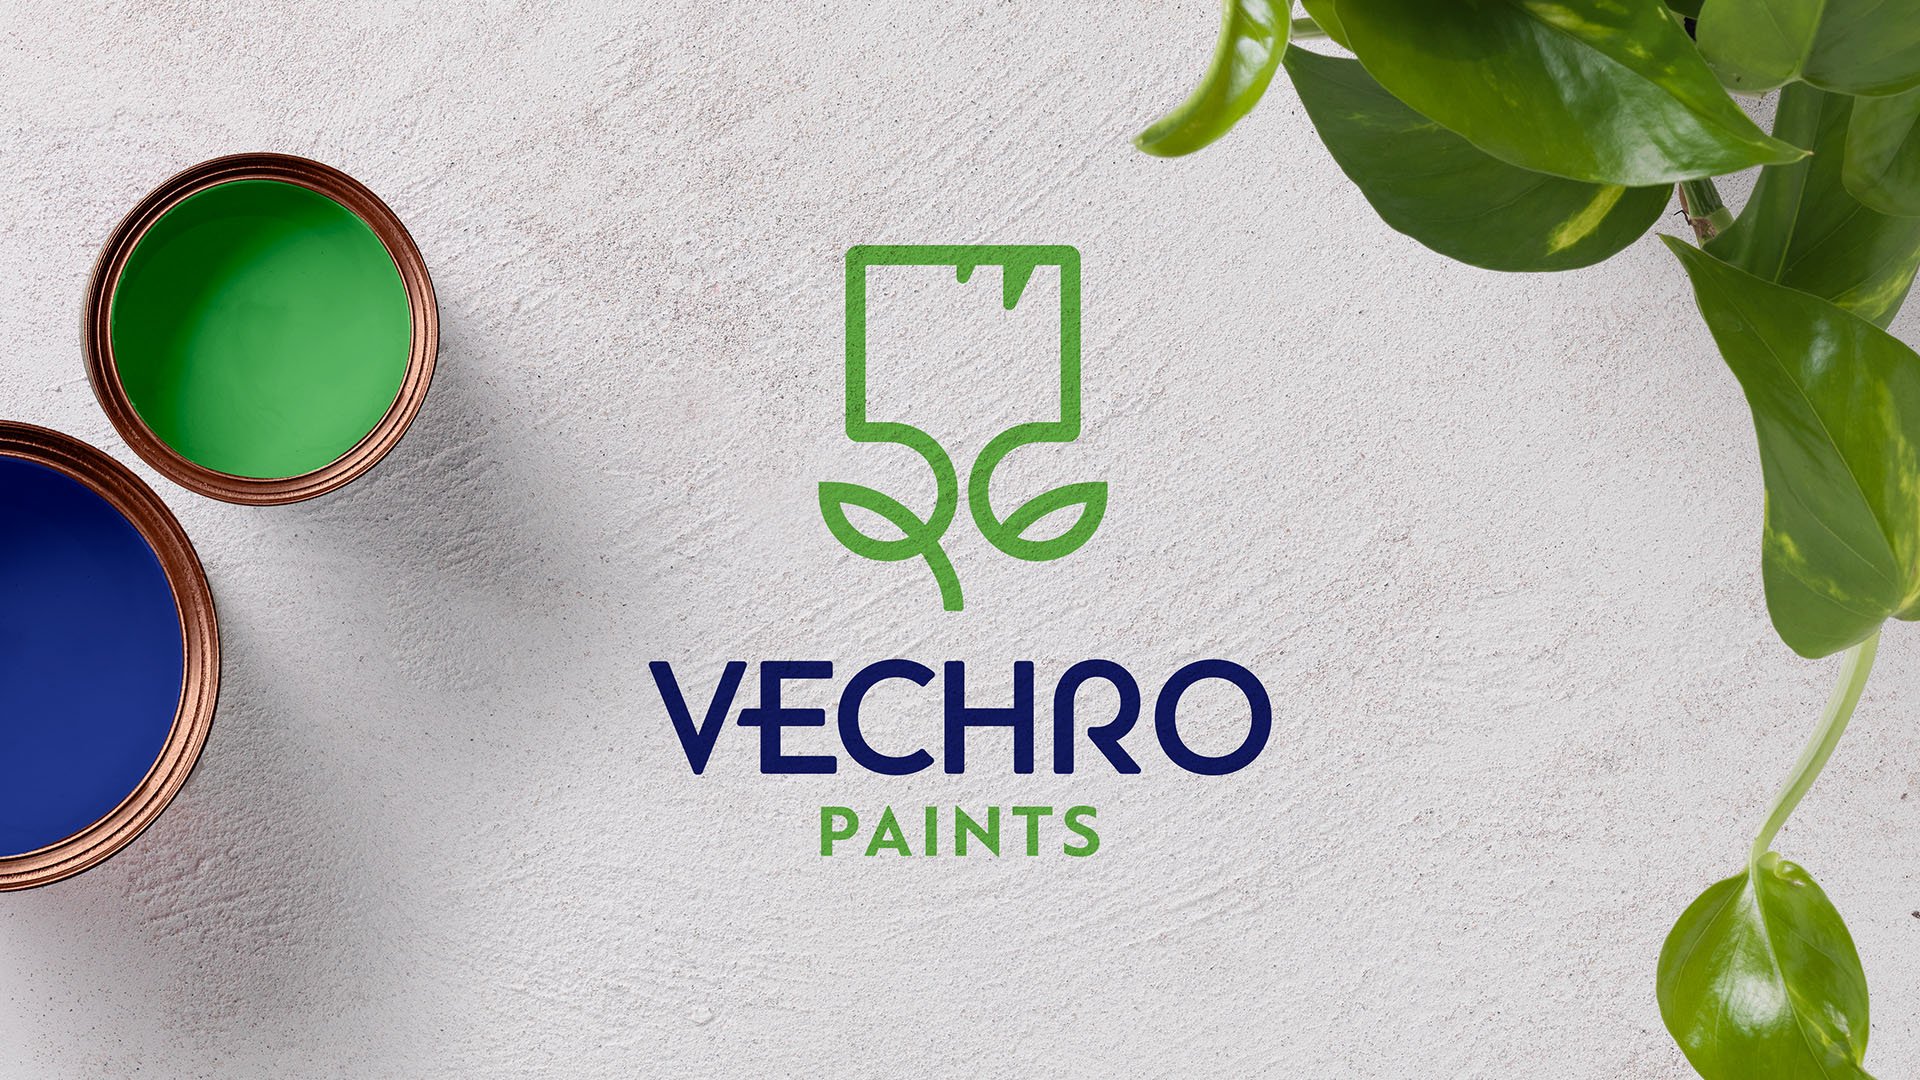 Vechro paints logo redesign